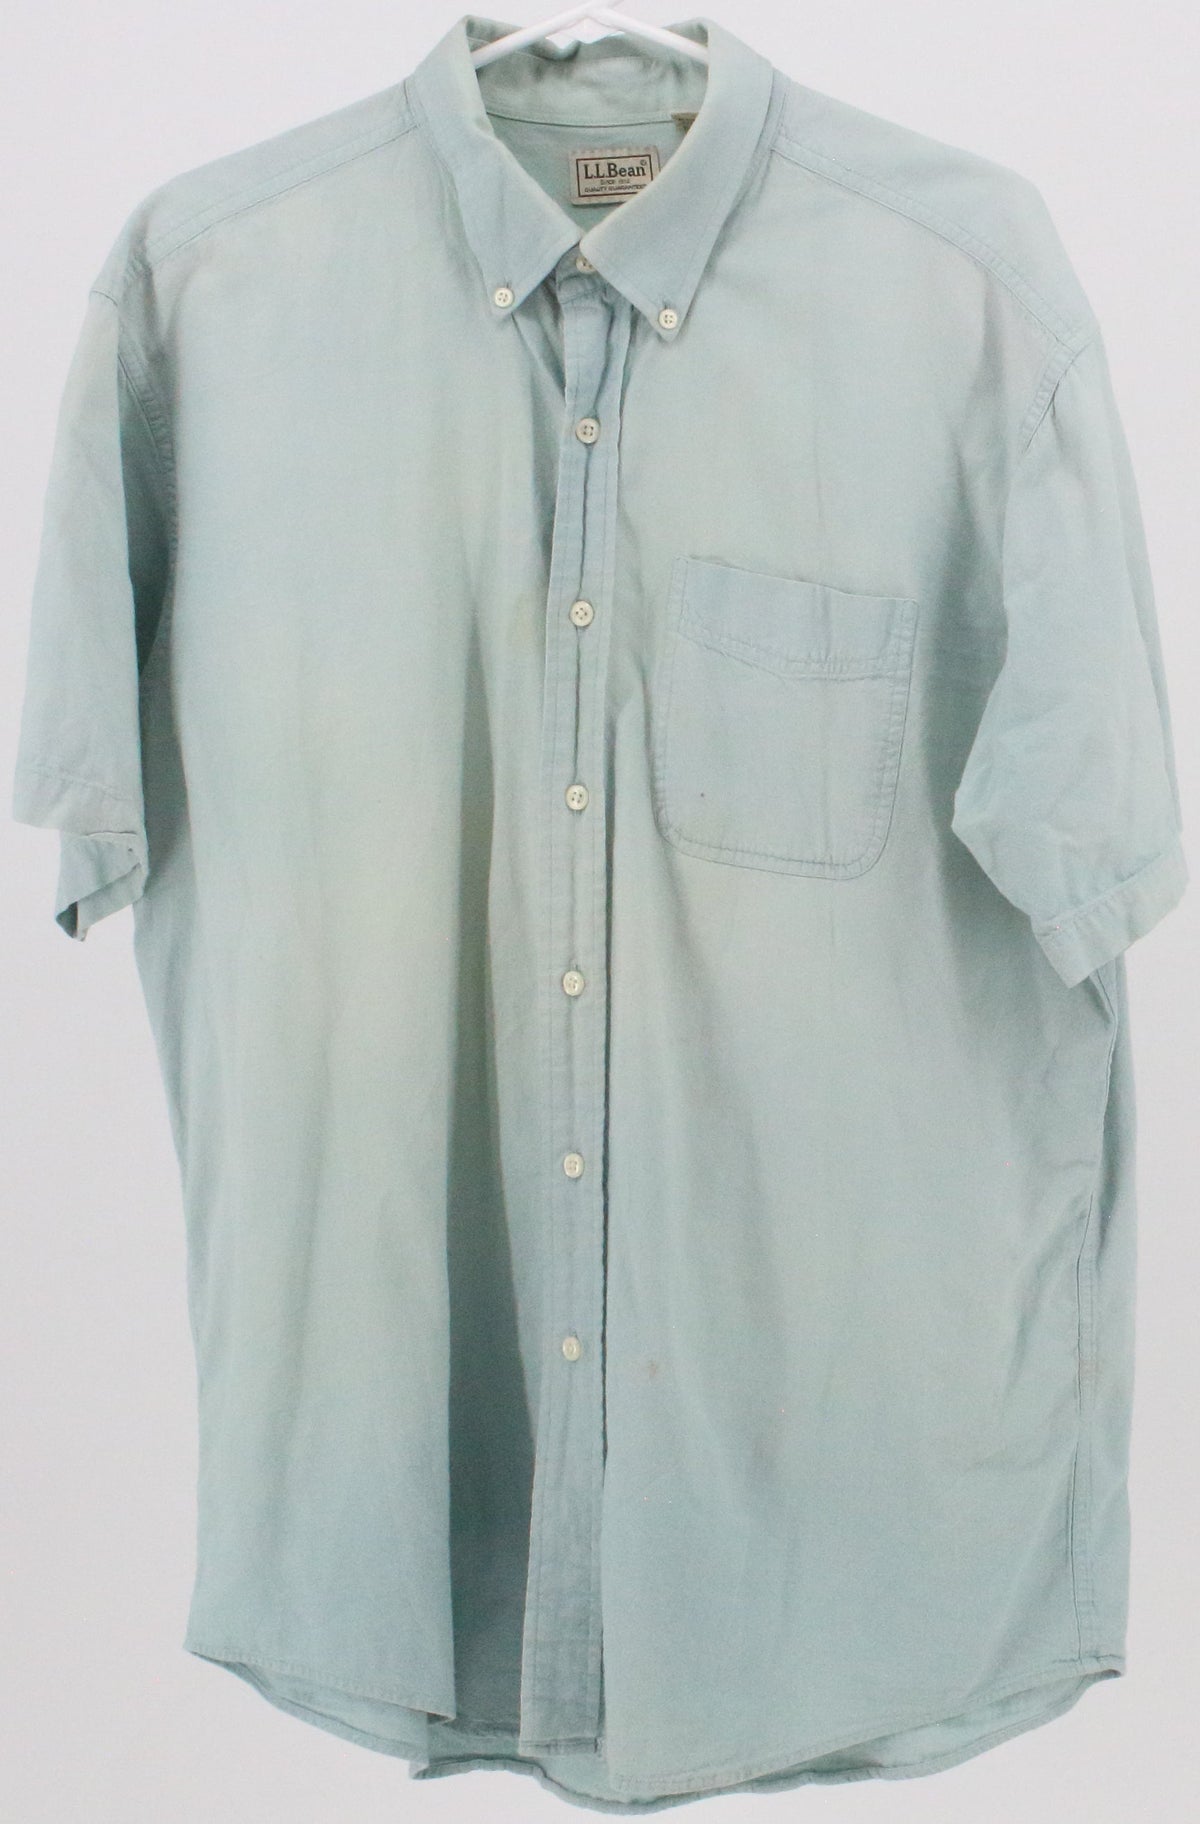 L.L.Bean Light Blue Short Sleeve Shirt